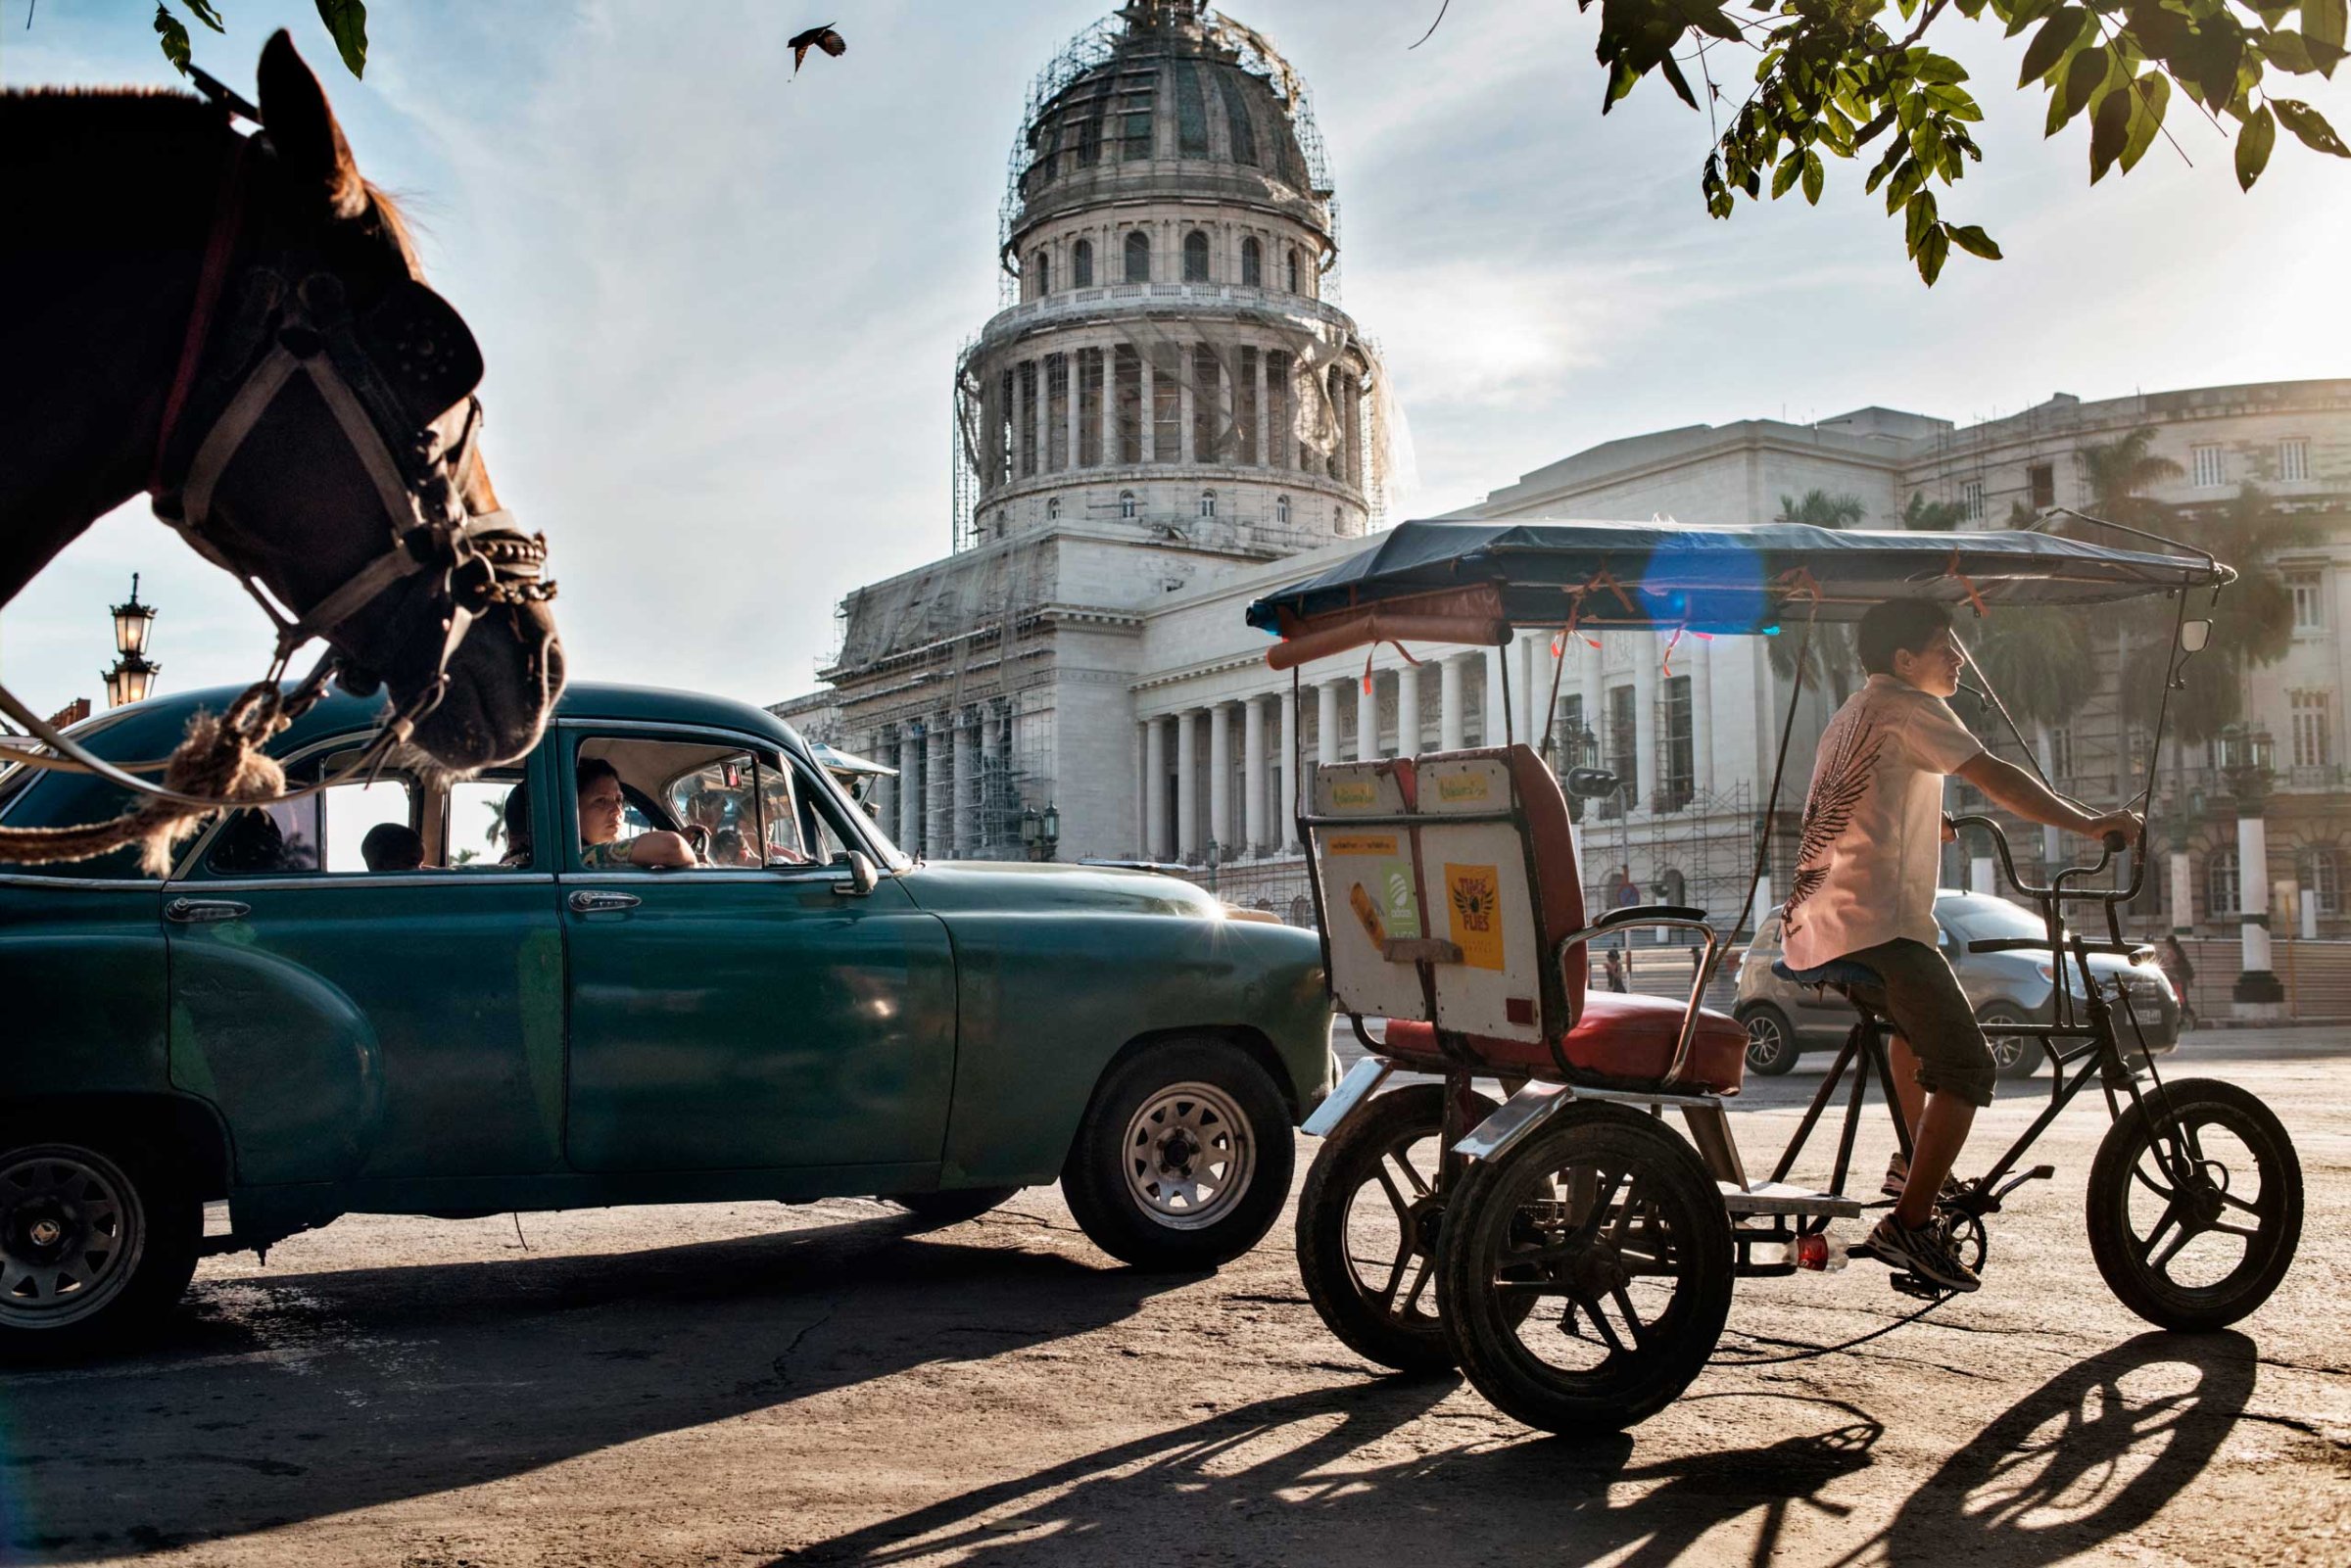 El Capitolio, the National Capitol Building in Havana, Dec. 2014.